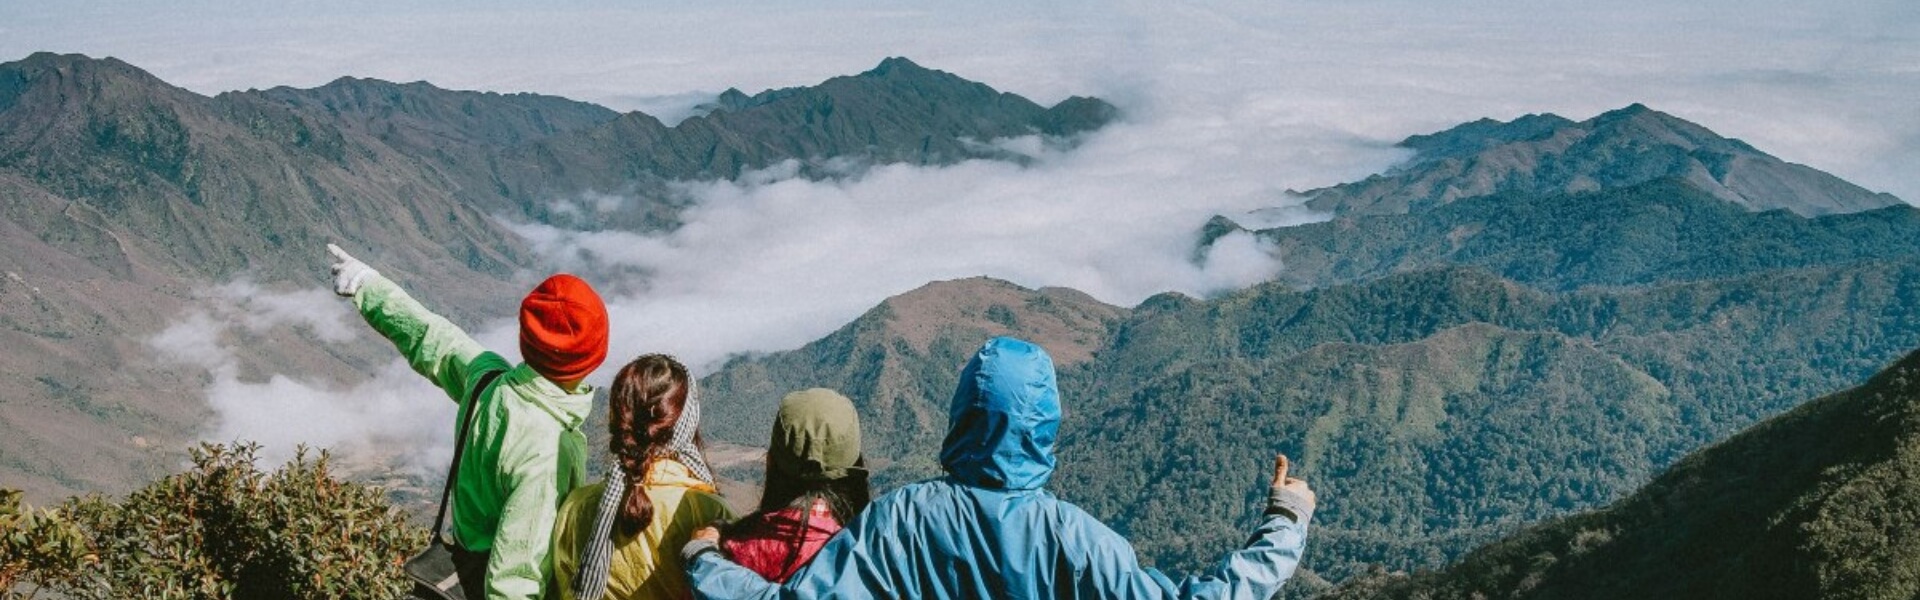 10 điểm du lịch núi đẹp tại Việt Nam